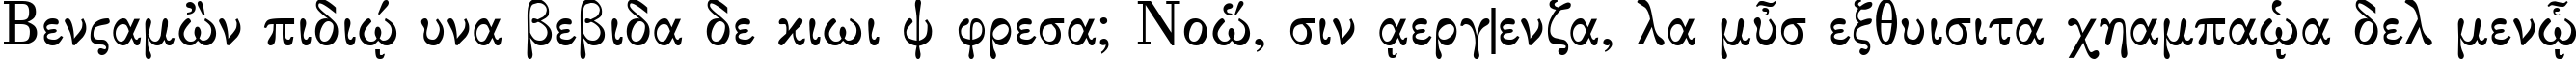 Пример написания шрифтом Greek serge1 normal текста на испанском